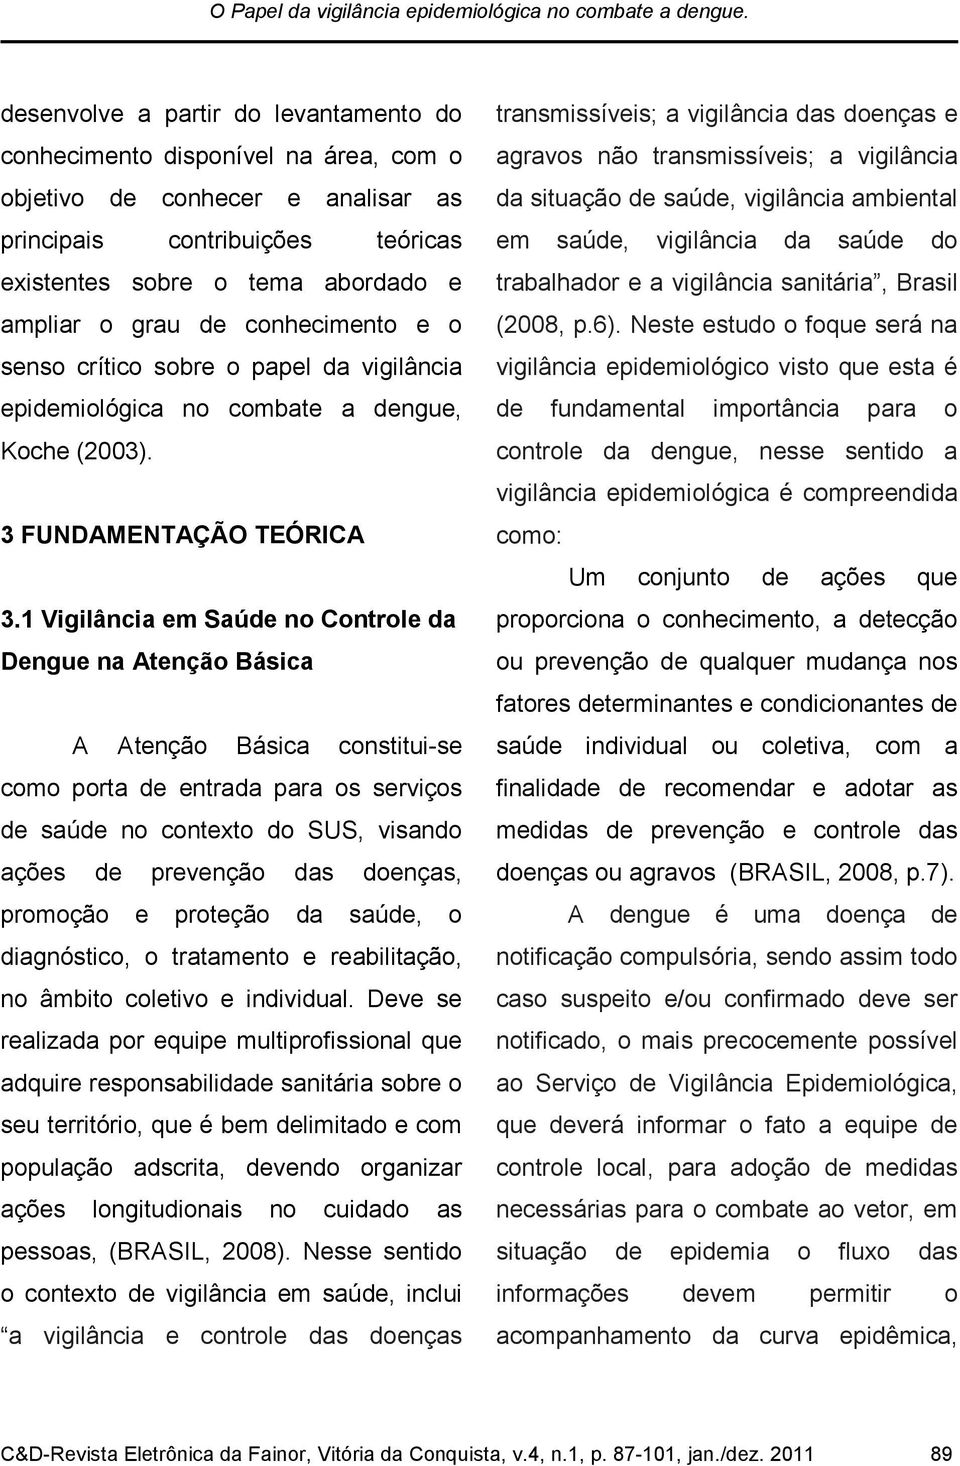 conhecimento e o senso crítico sobre o papel da vigilância epidemiológica no combate a dengue, Koche (2003). 3 FUNDAMENTAÇÃO TEÓRICA 3.